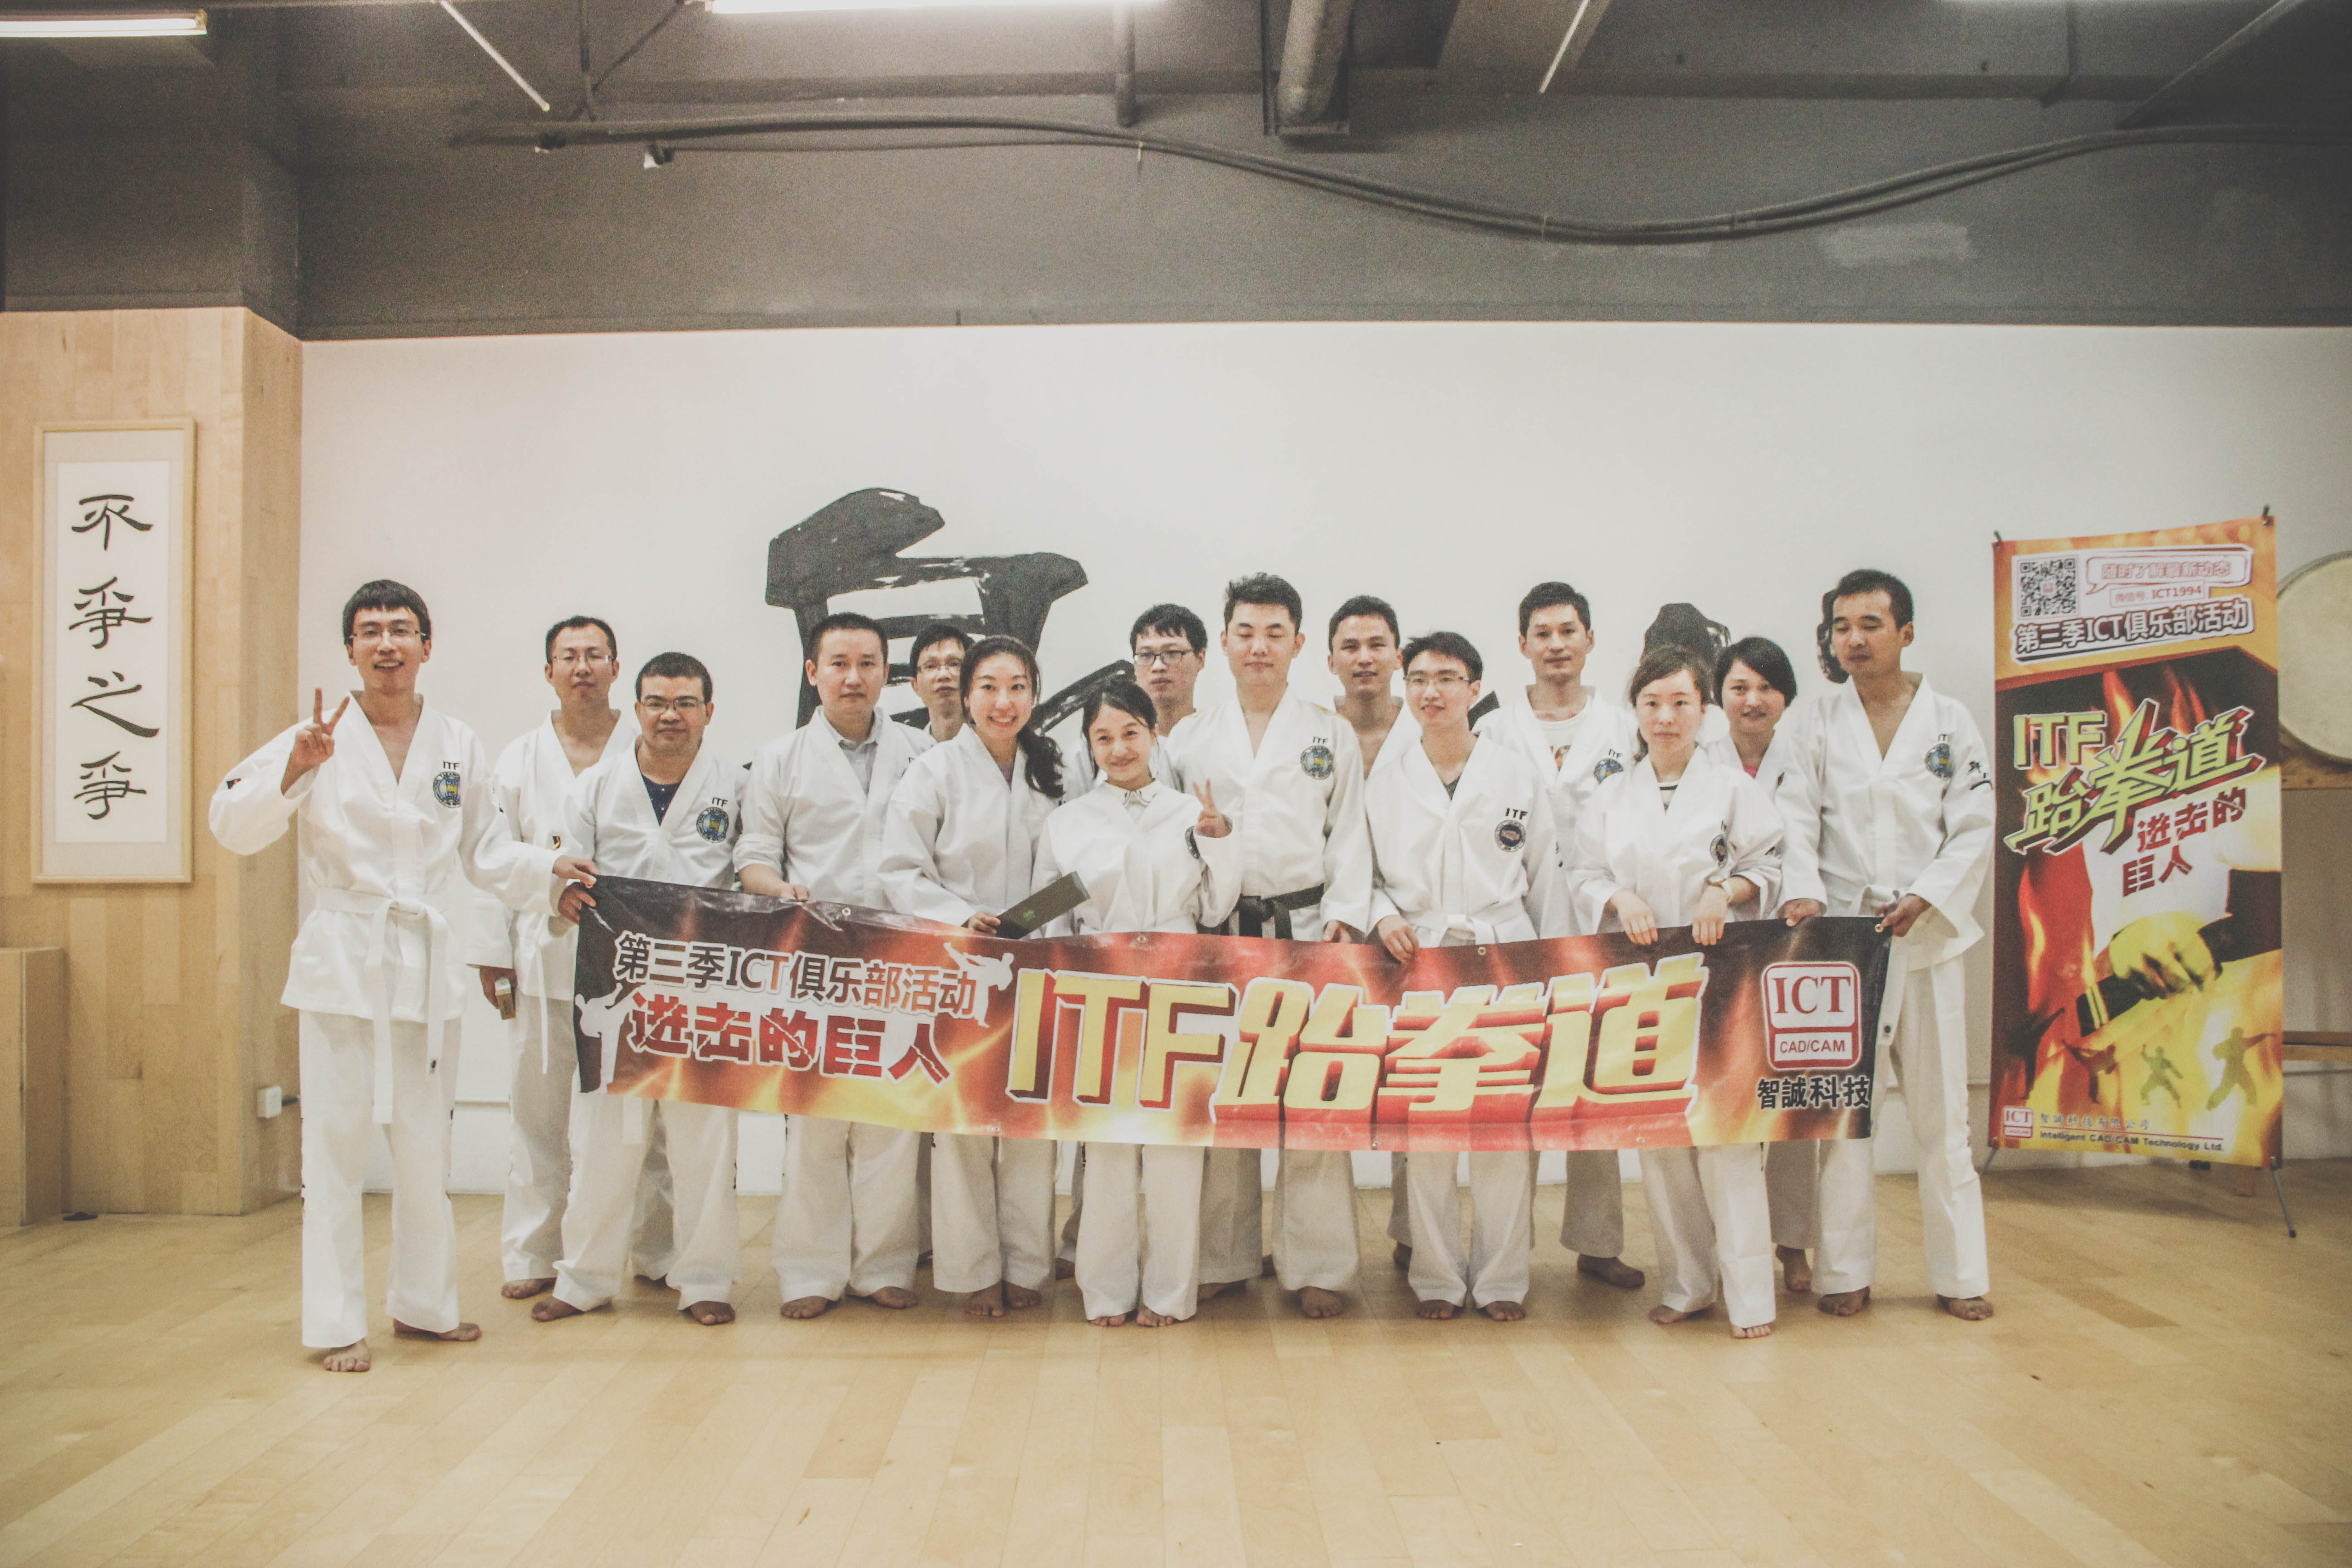 第三屆深圳俱樂部活動--ITF 跆拳道